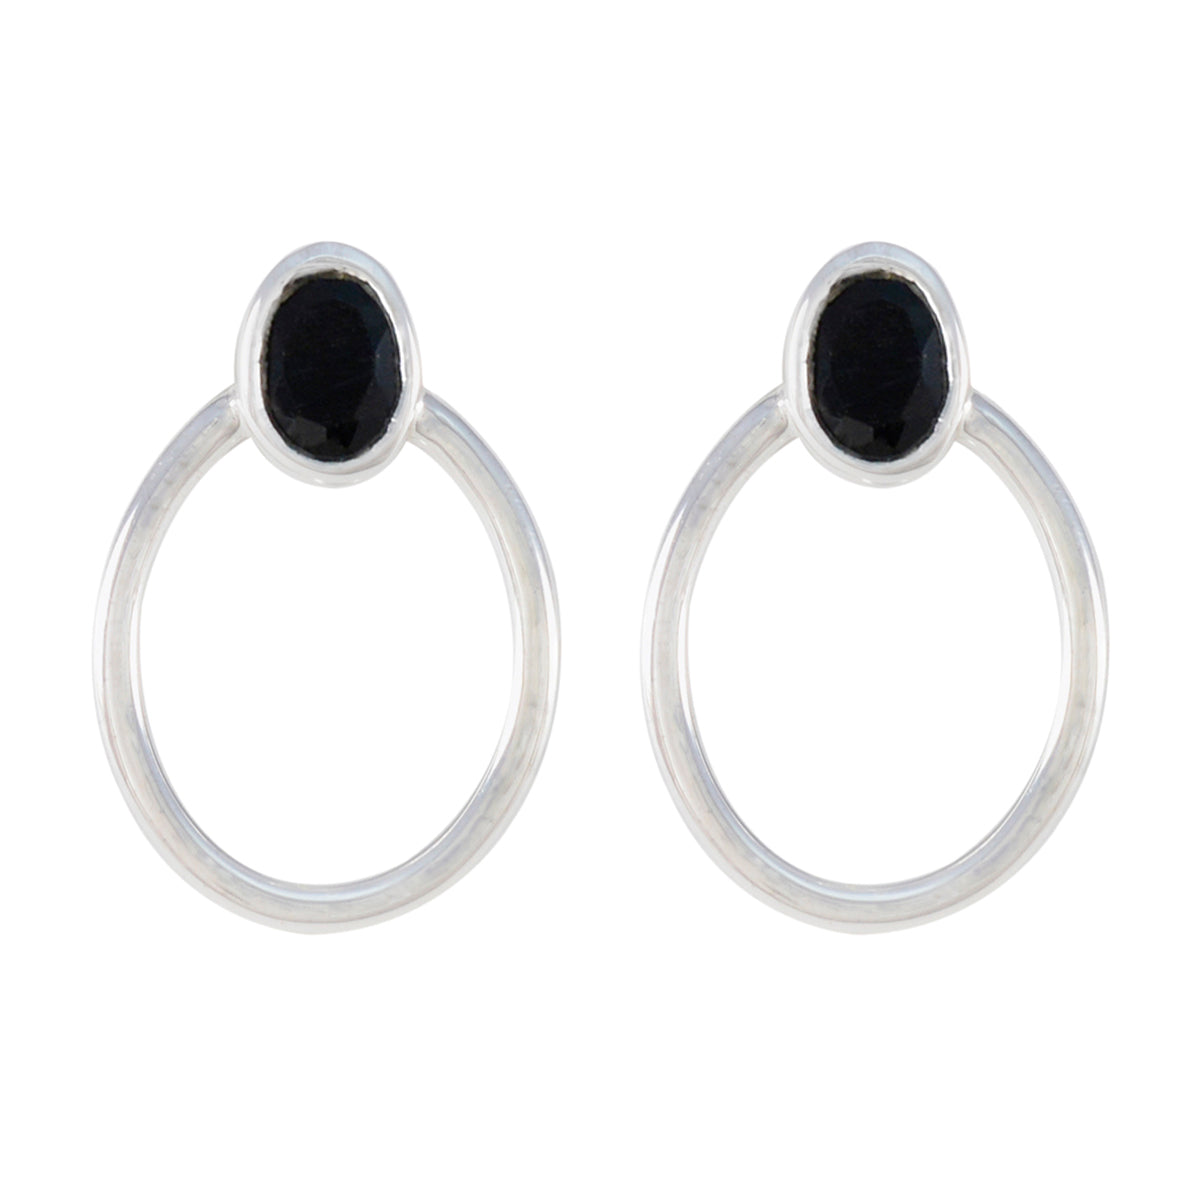 Riyo Cute 925 Sterling Silver Earring For Sister Black Onyx Earring Bezel Setting Black Earring Stud Earring